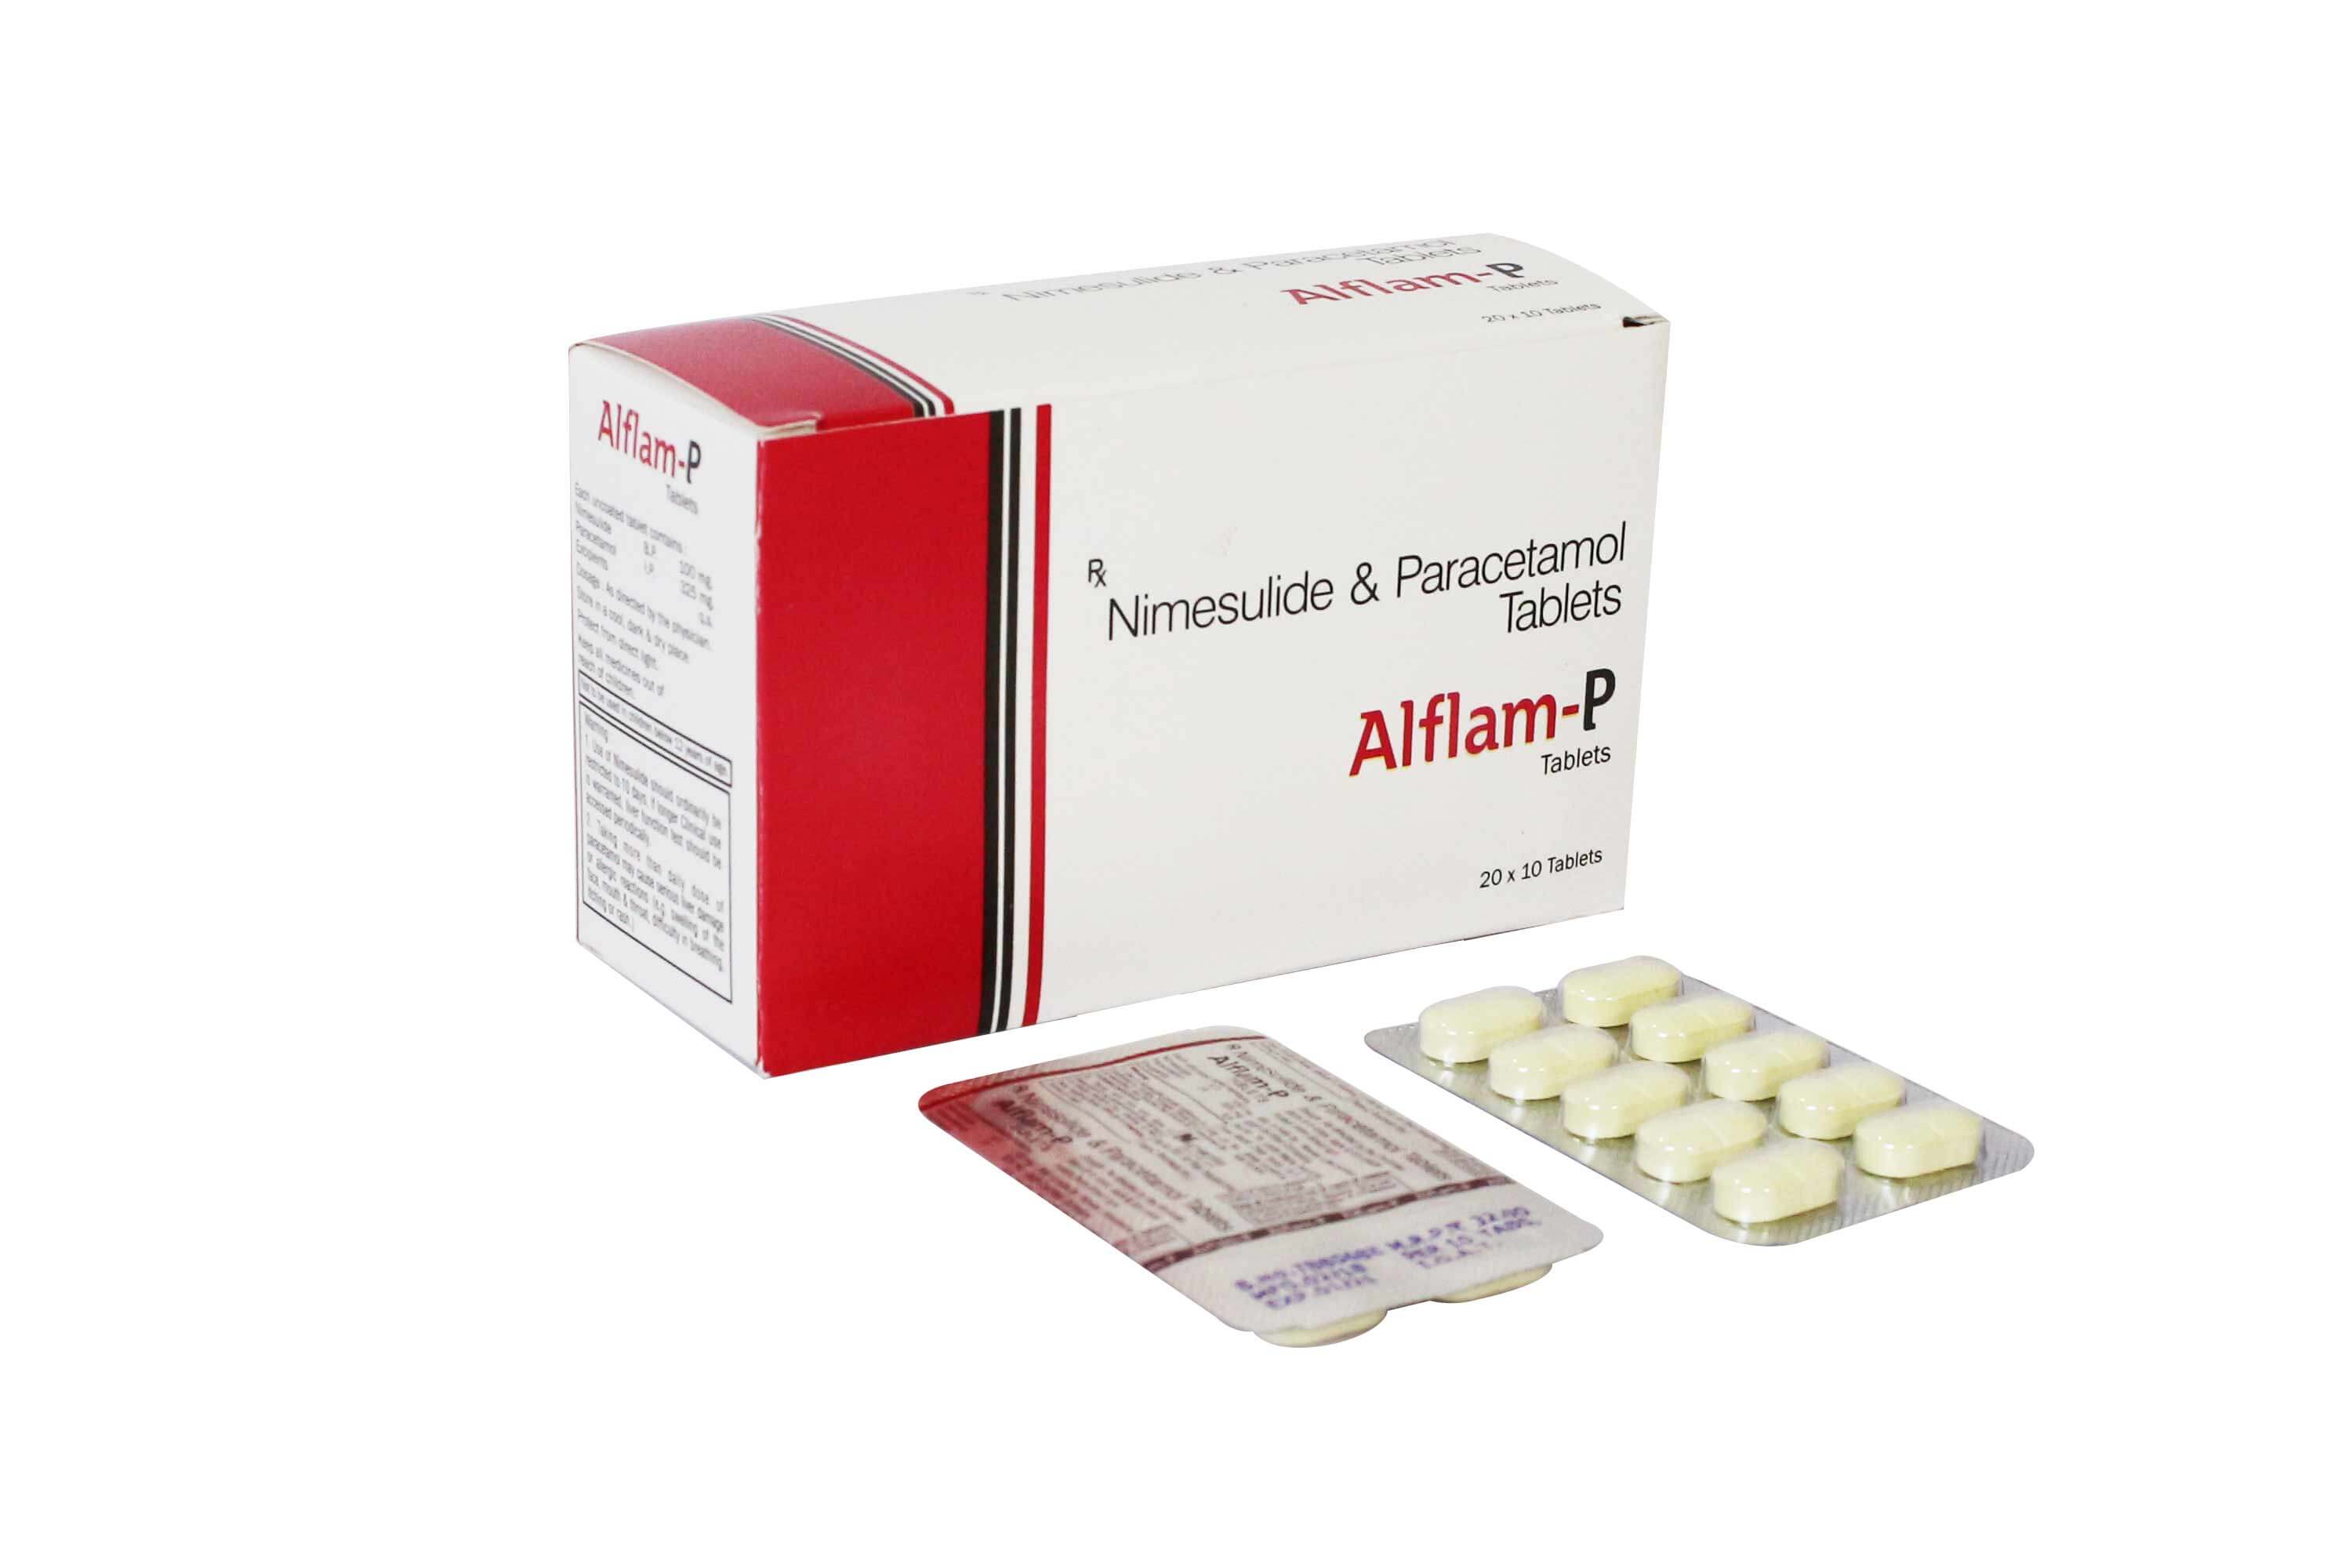 Product Name: Alfam P, Compositions of Alfam P are Nimesulide & Paracetamol Tablets - Numantis Healthcare